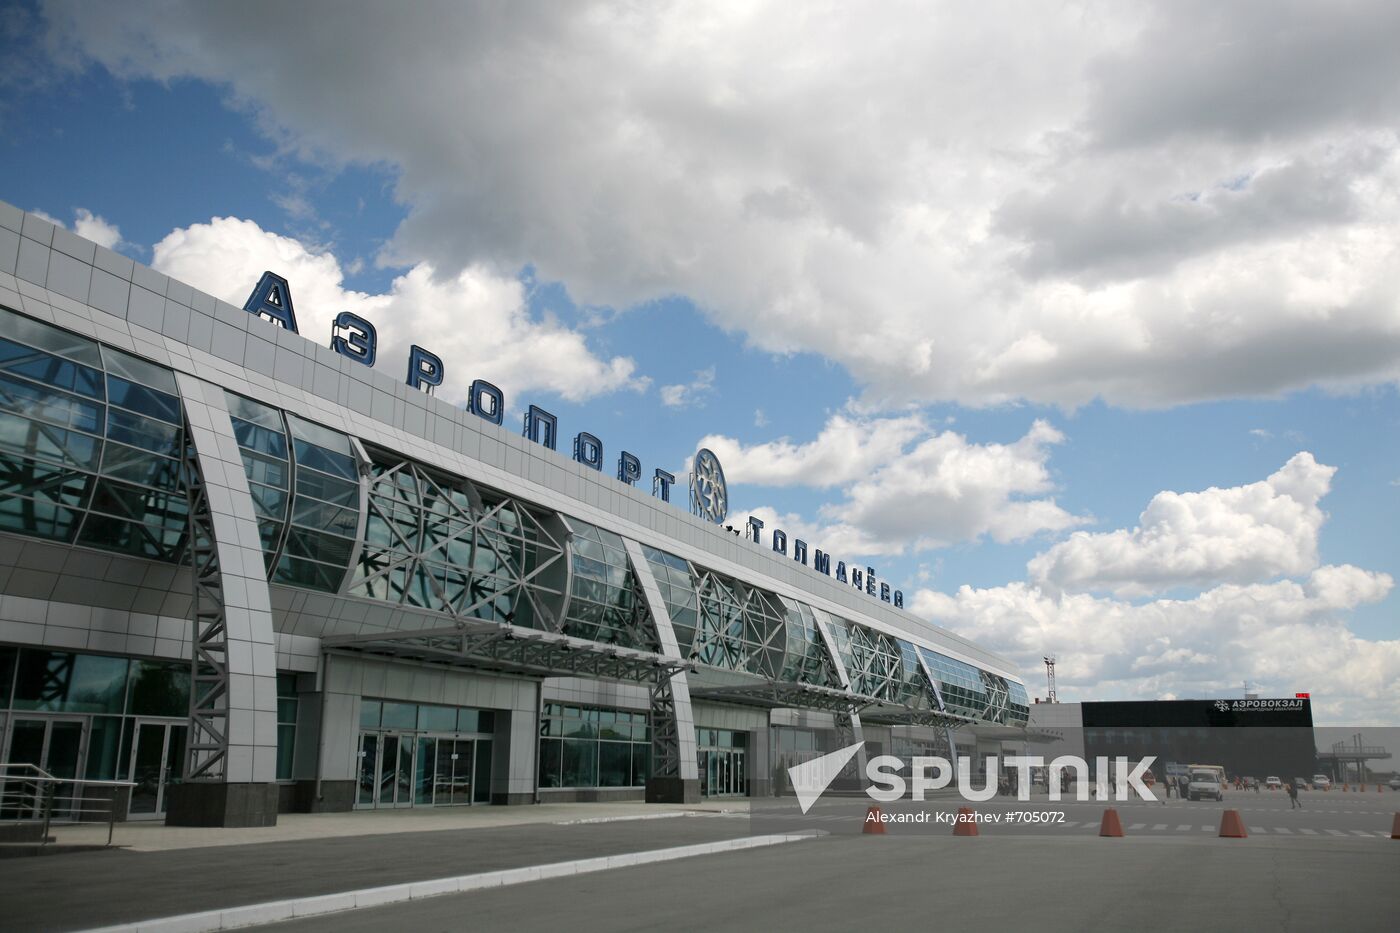 Tolmachovo airport